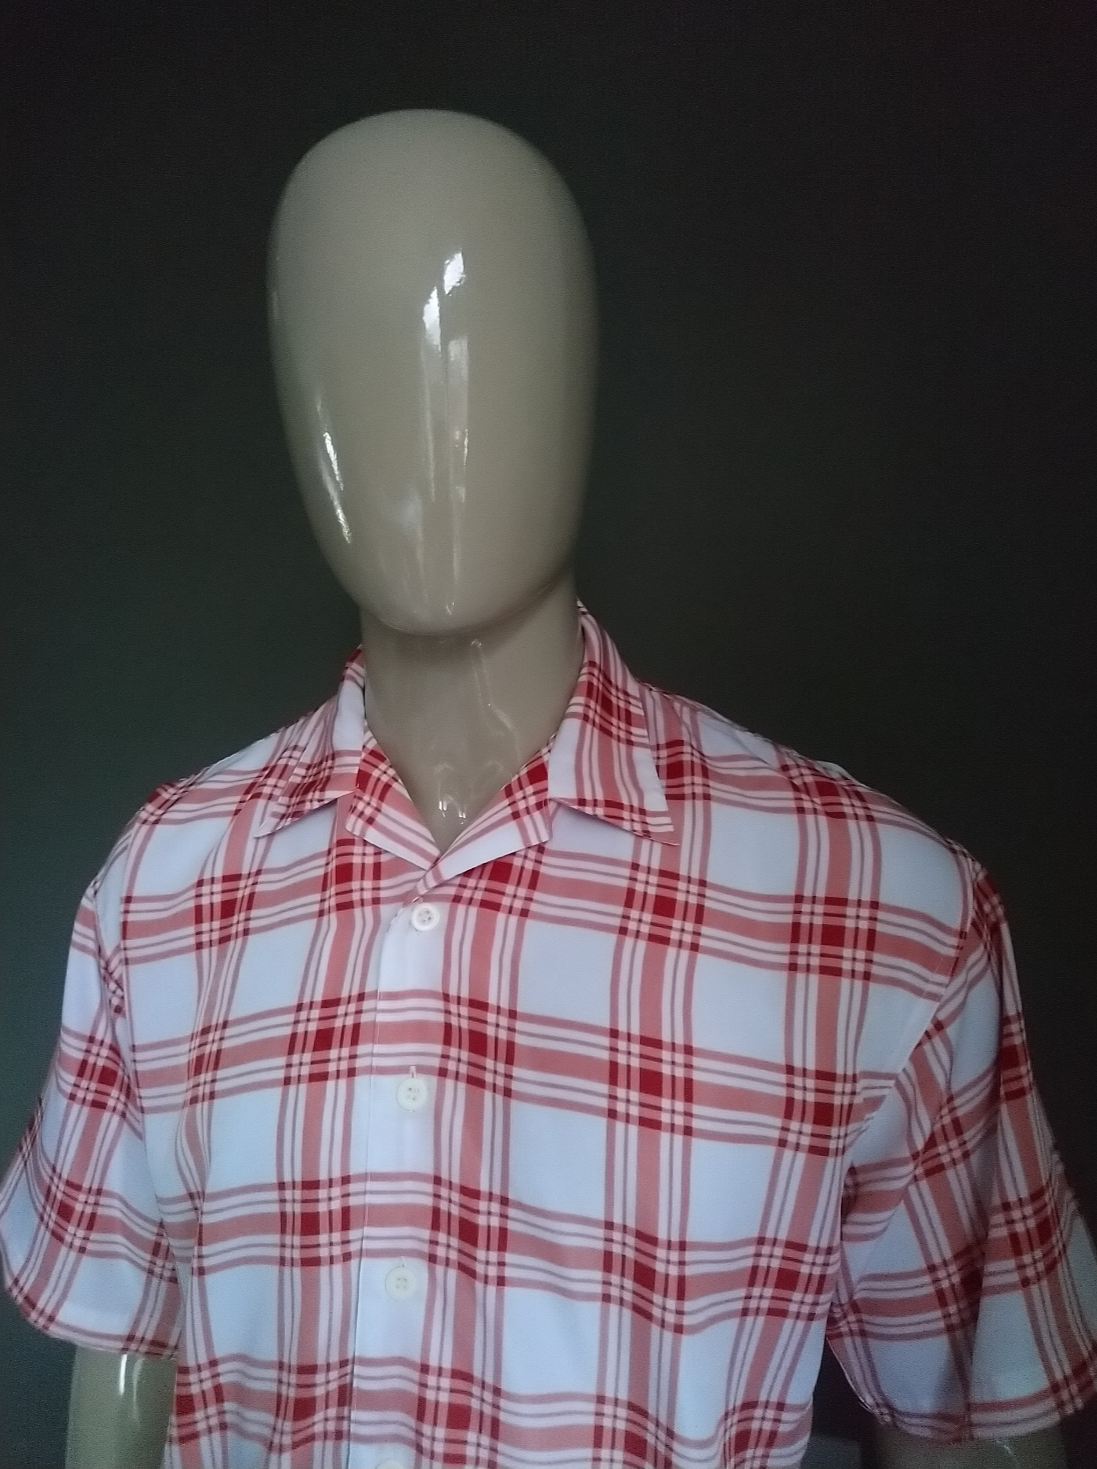 Camicia Supercool con maniche corte. Motivo a quadretti bianco rosa rosso. Taglia L.